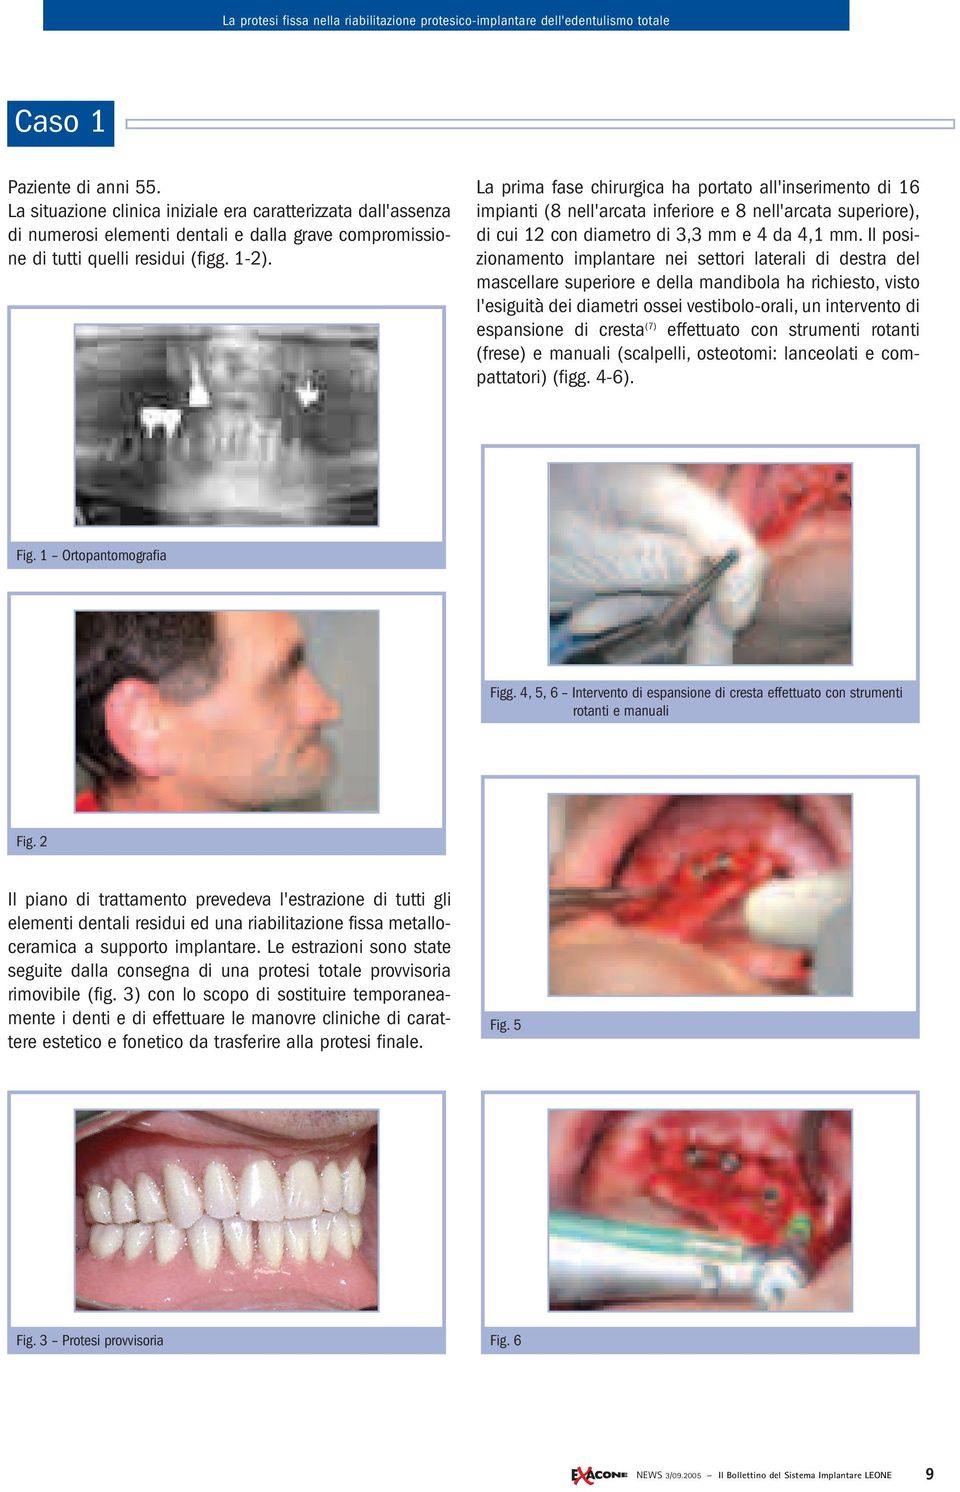 Il posizionamento implantare nei settori laterali di destra del mascellare superiore e della mandibola ha richiesto, visto l'esiguità dei diametri ossei vestibolo-orali, un intervento di espansione